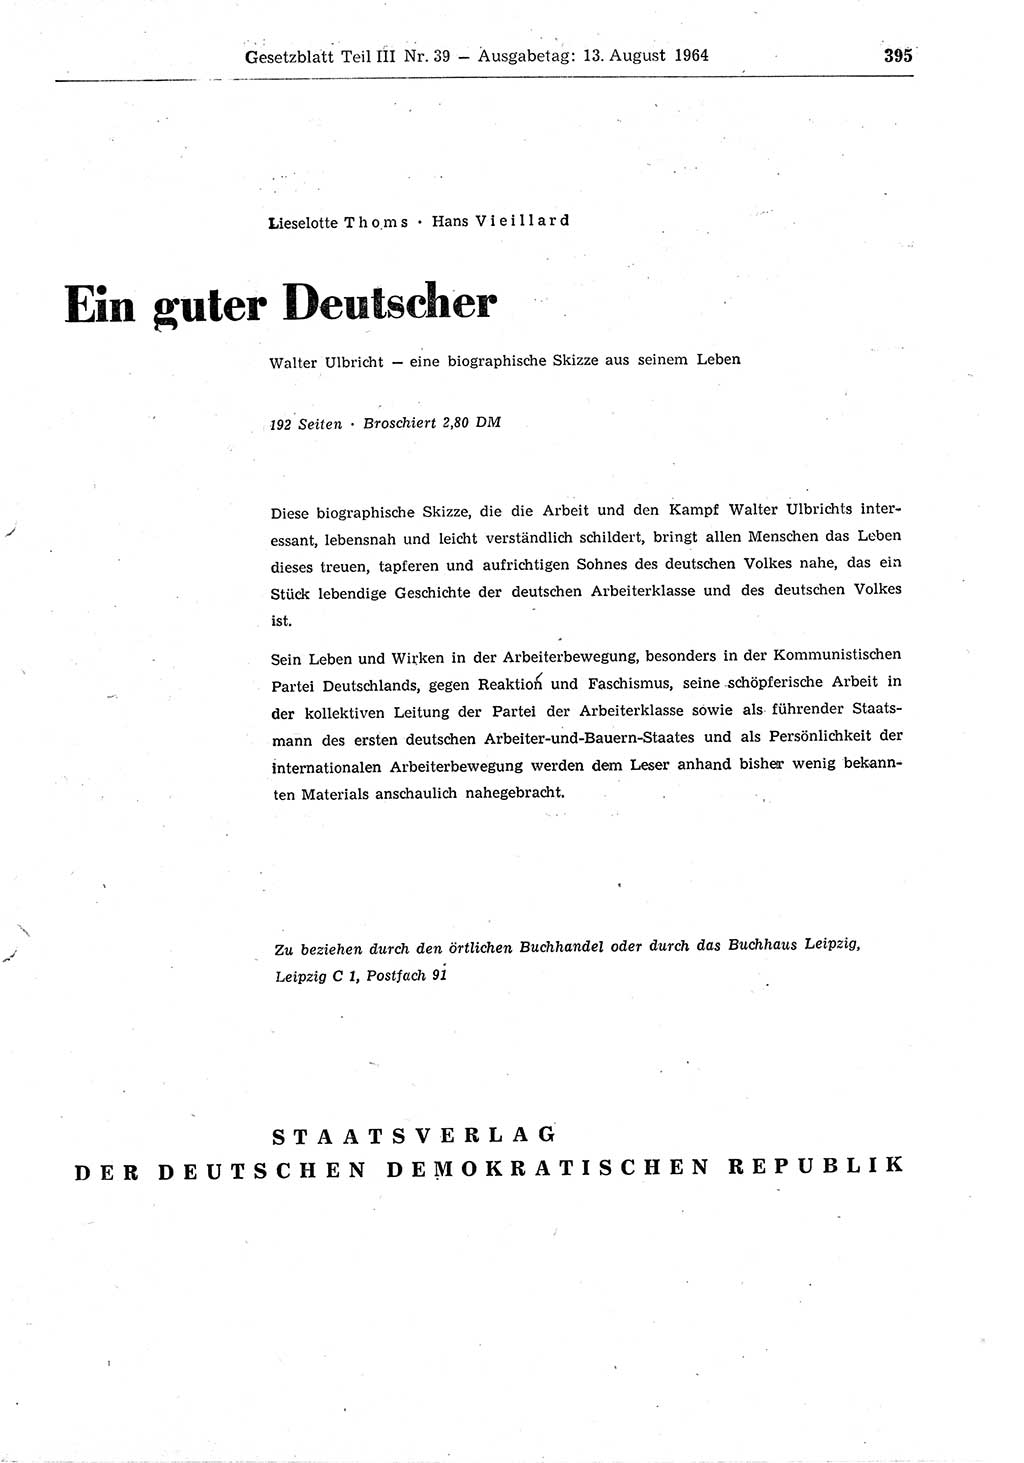 Gesetzblatt (GBl.) der Deutschen Demokratischen Republik (DDR) Teil ⅠⅠⅠ 1964, Seite 395 (GBl. DDR ⅠⅠⅠ 1964, S. 395)